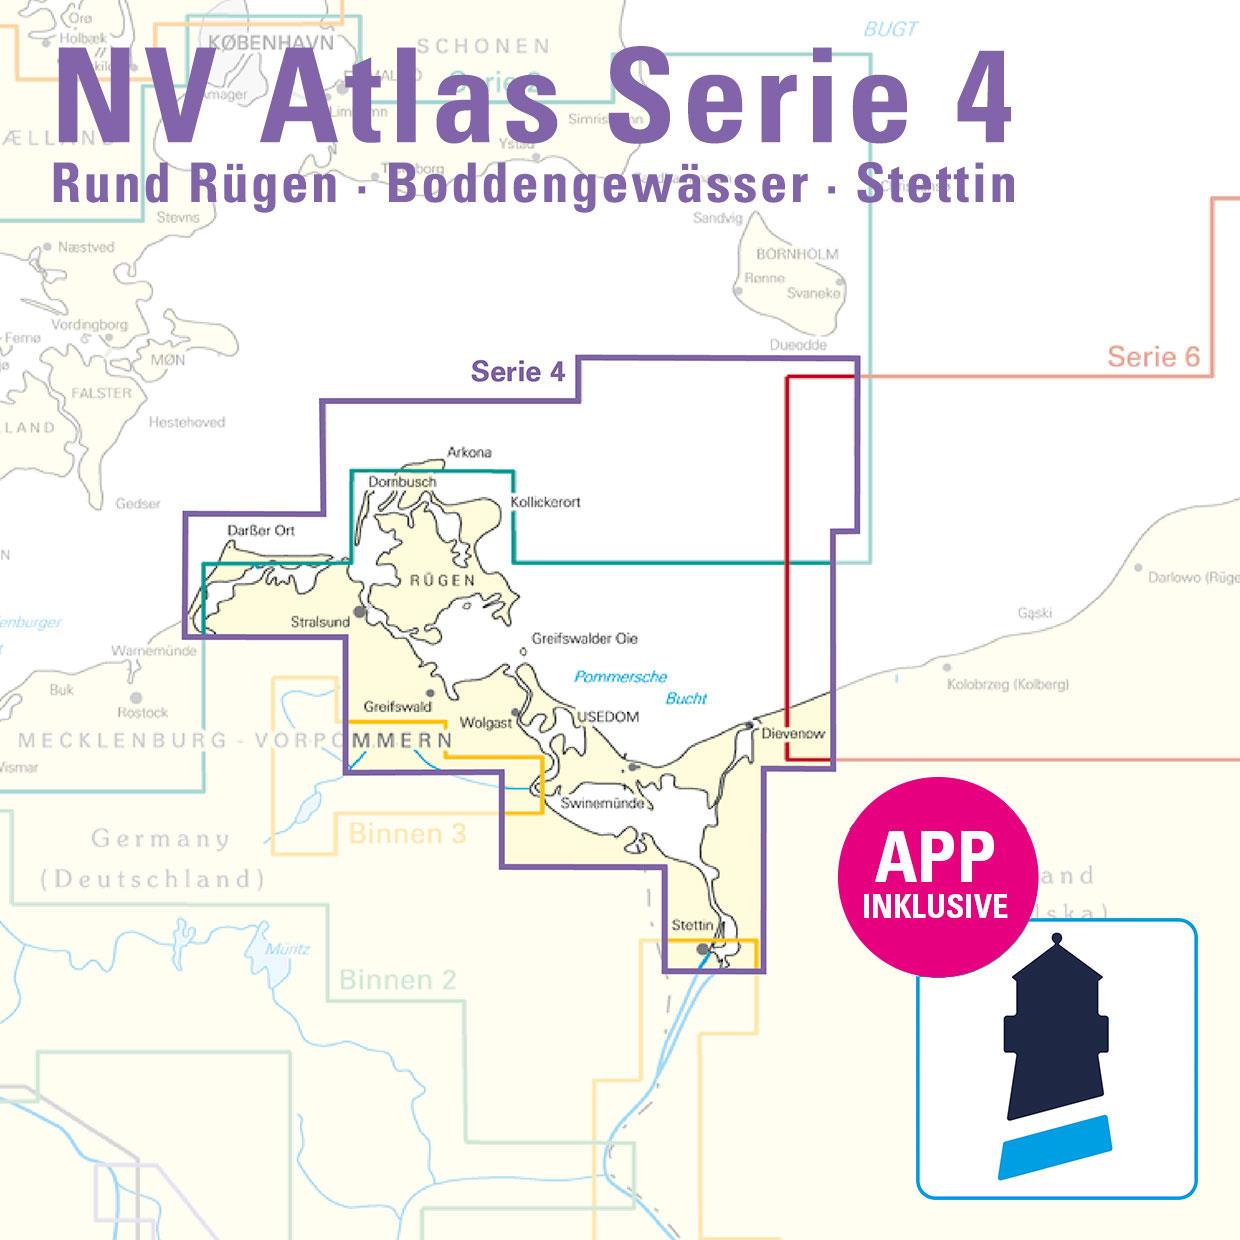 ABO - NV Charts Baltic Serie 4 Rund Rügen - Boddengewässer - Stettin